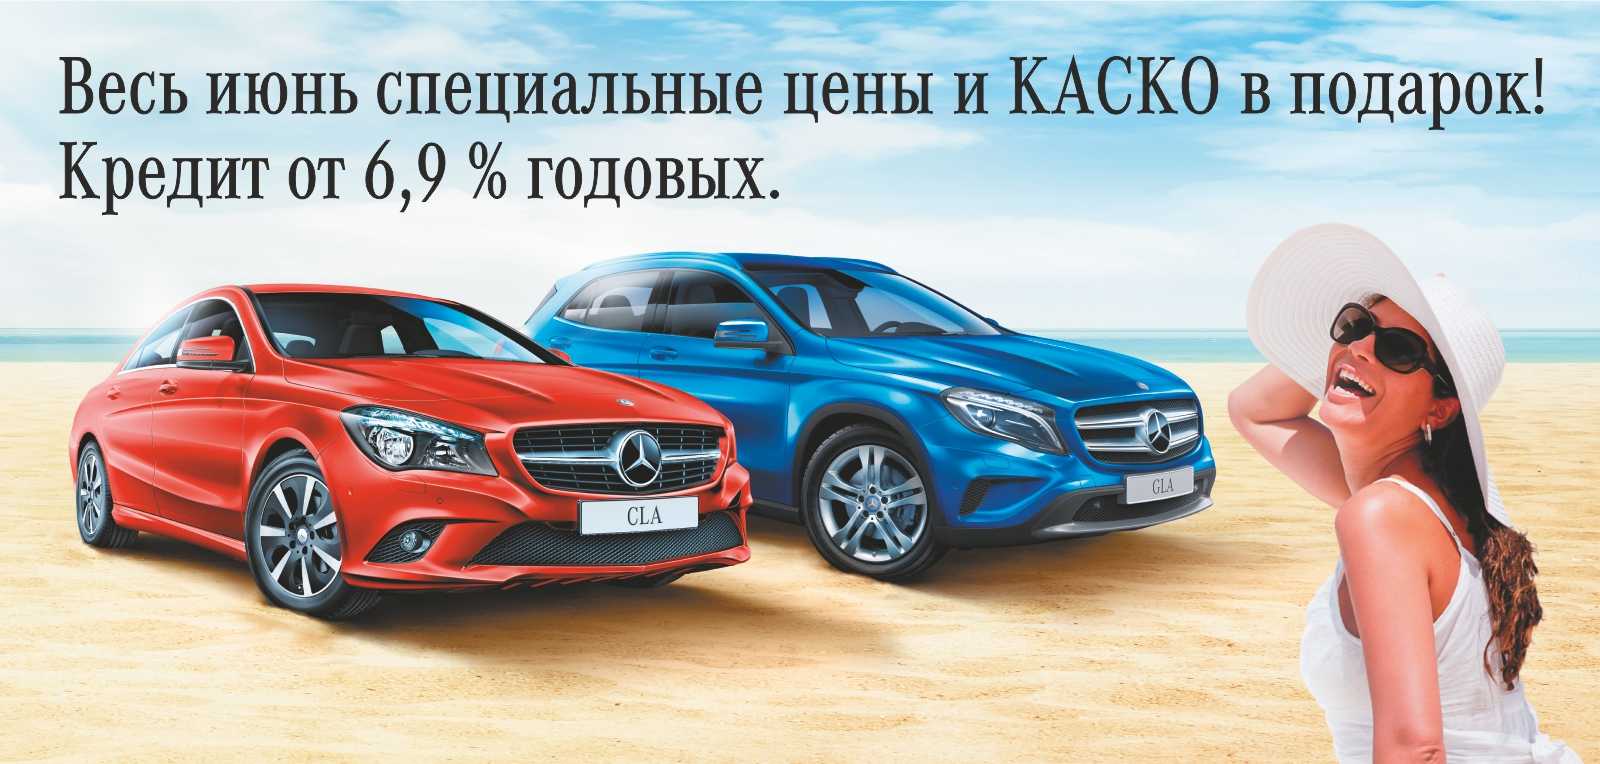 Самый роскошный mercedes-benz s-class w221 всего за 530 тысяч рублей – почему так дёшево?